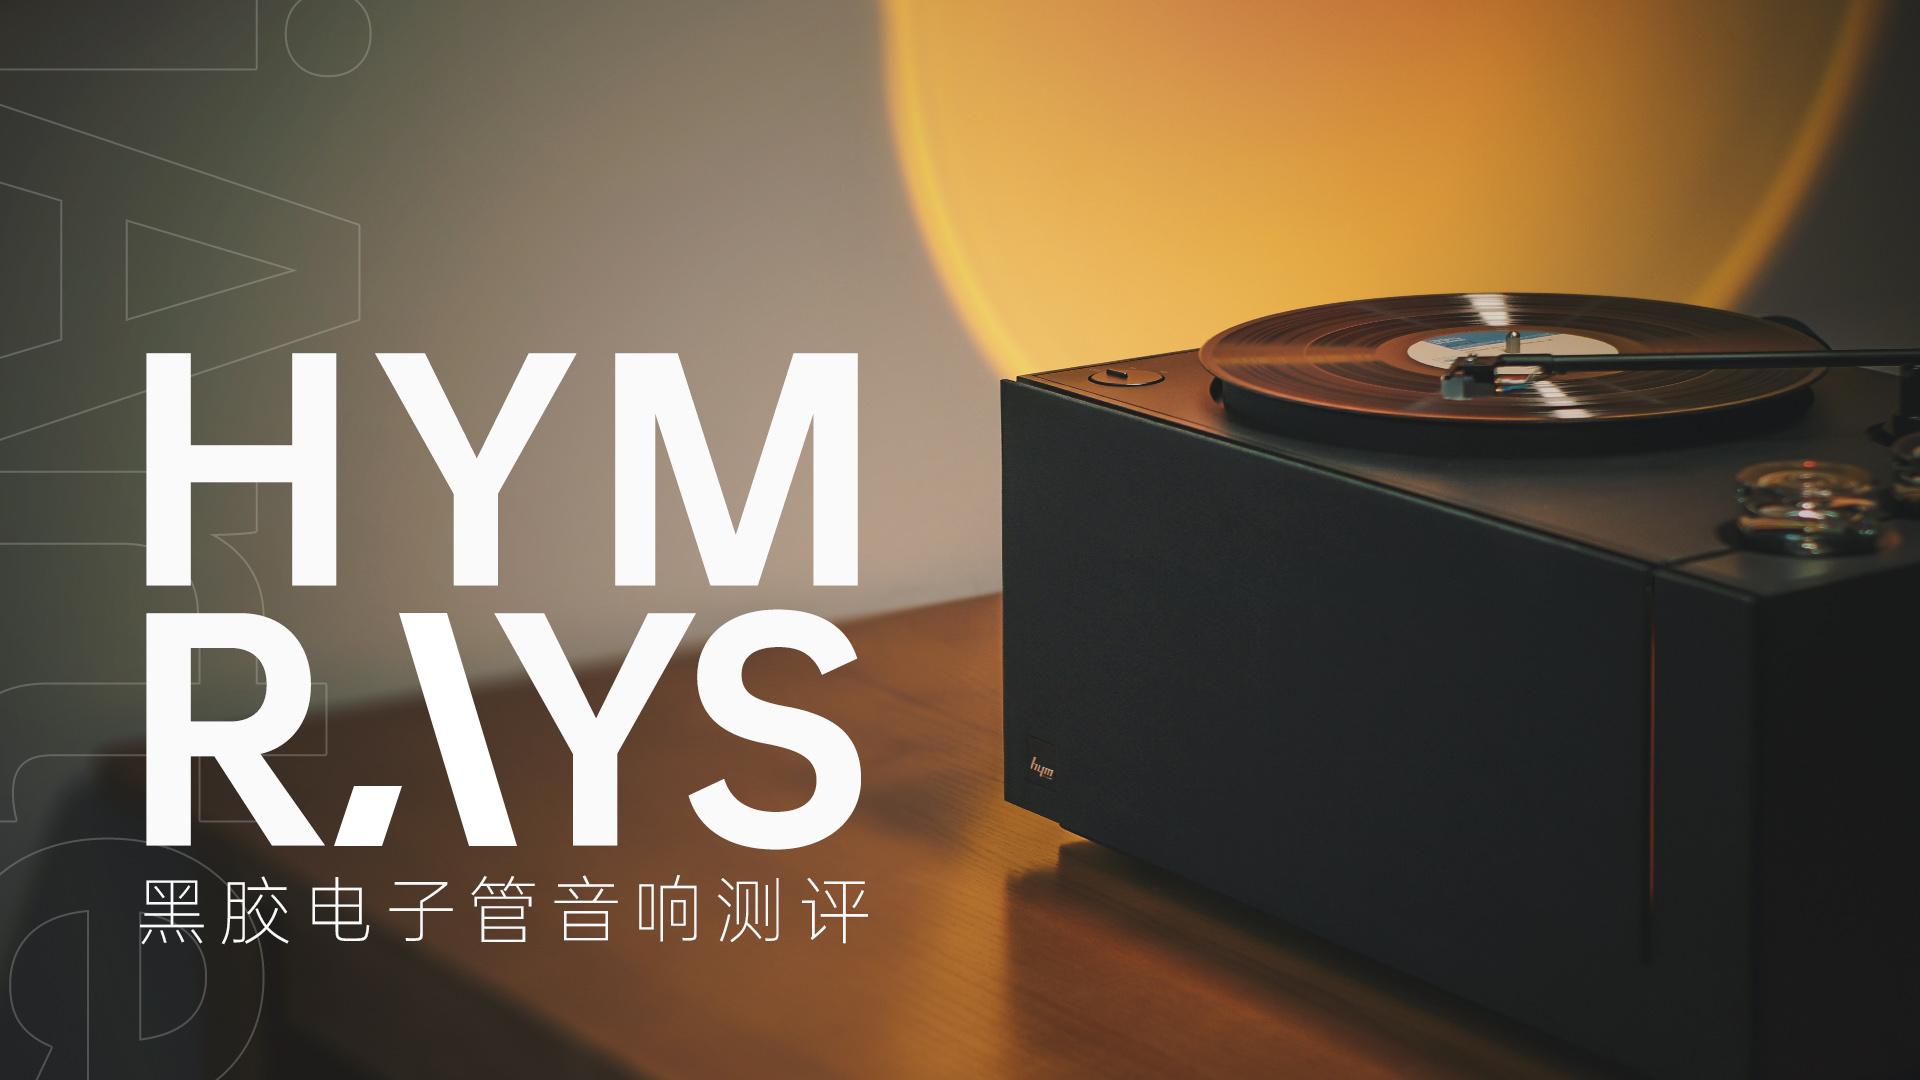 为一体式黑胶机正名，仅售2万的HYM-RAYS黑胶电子管音响体验